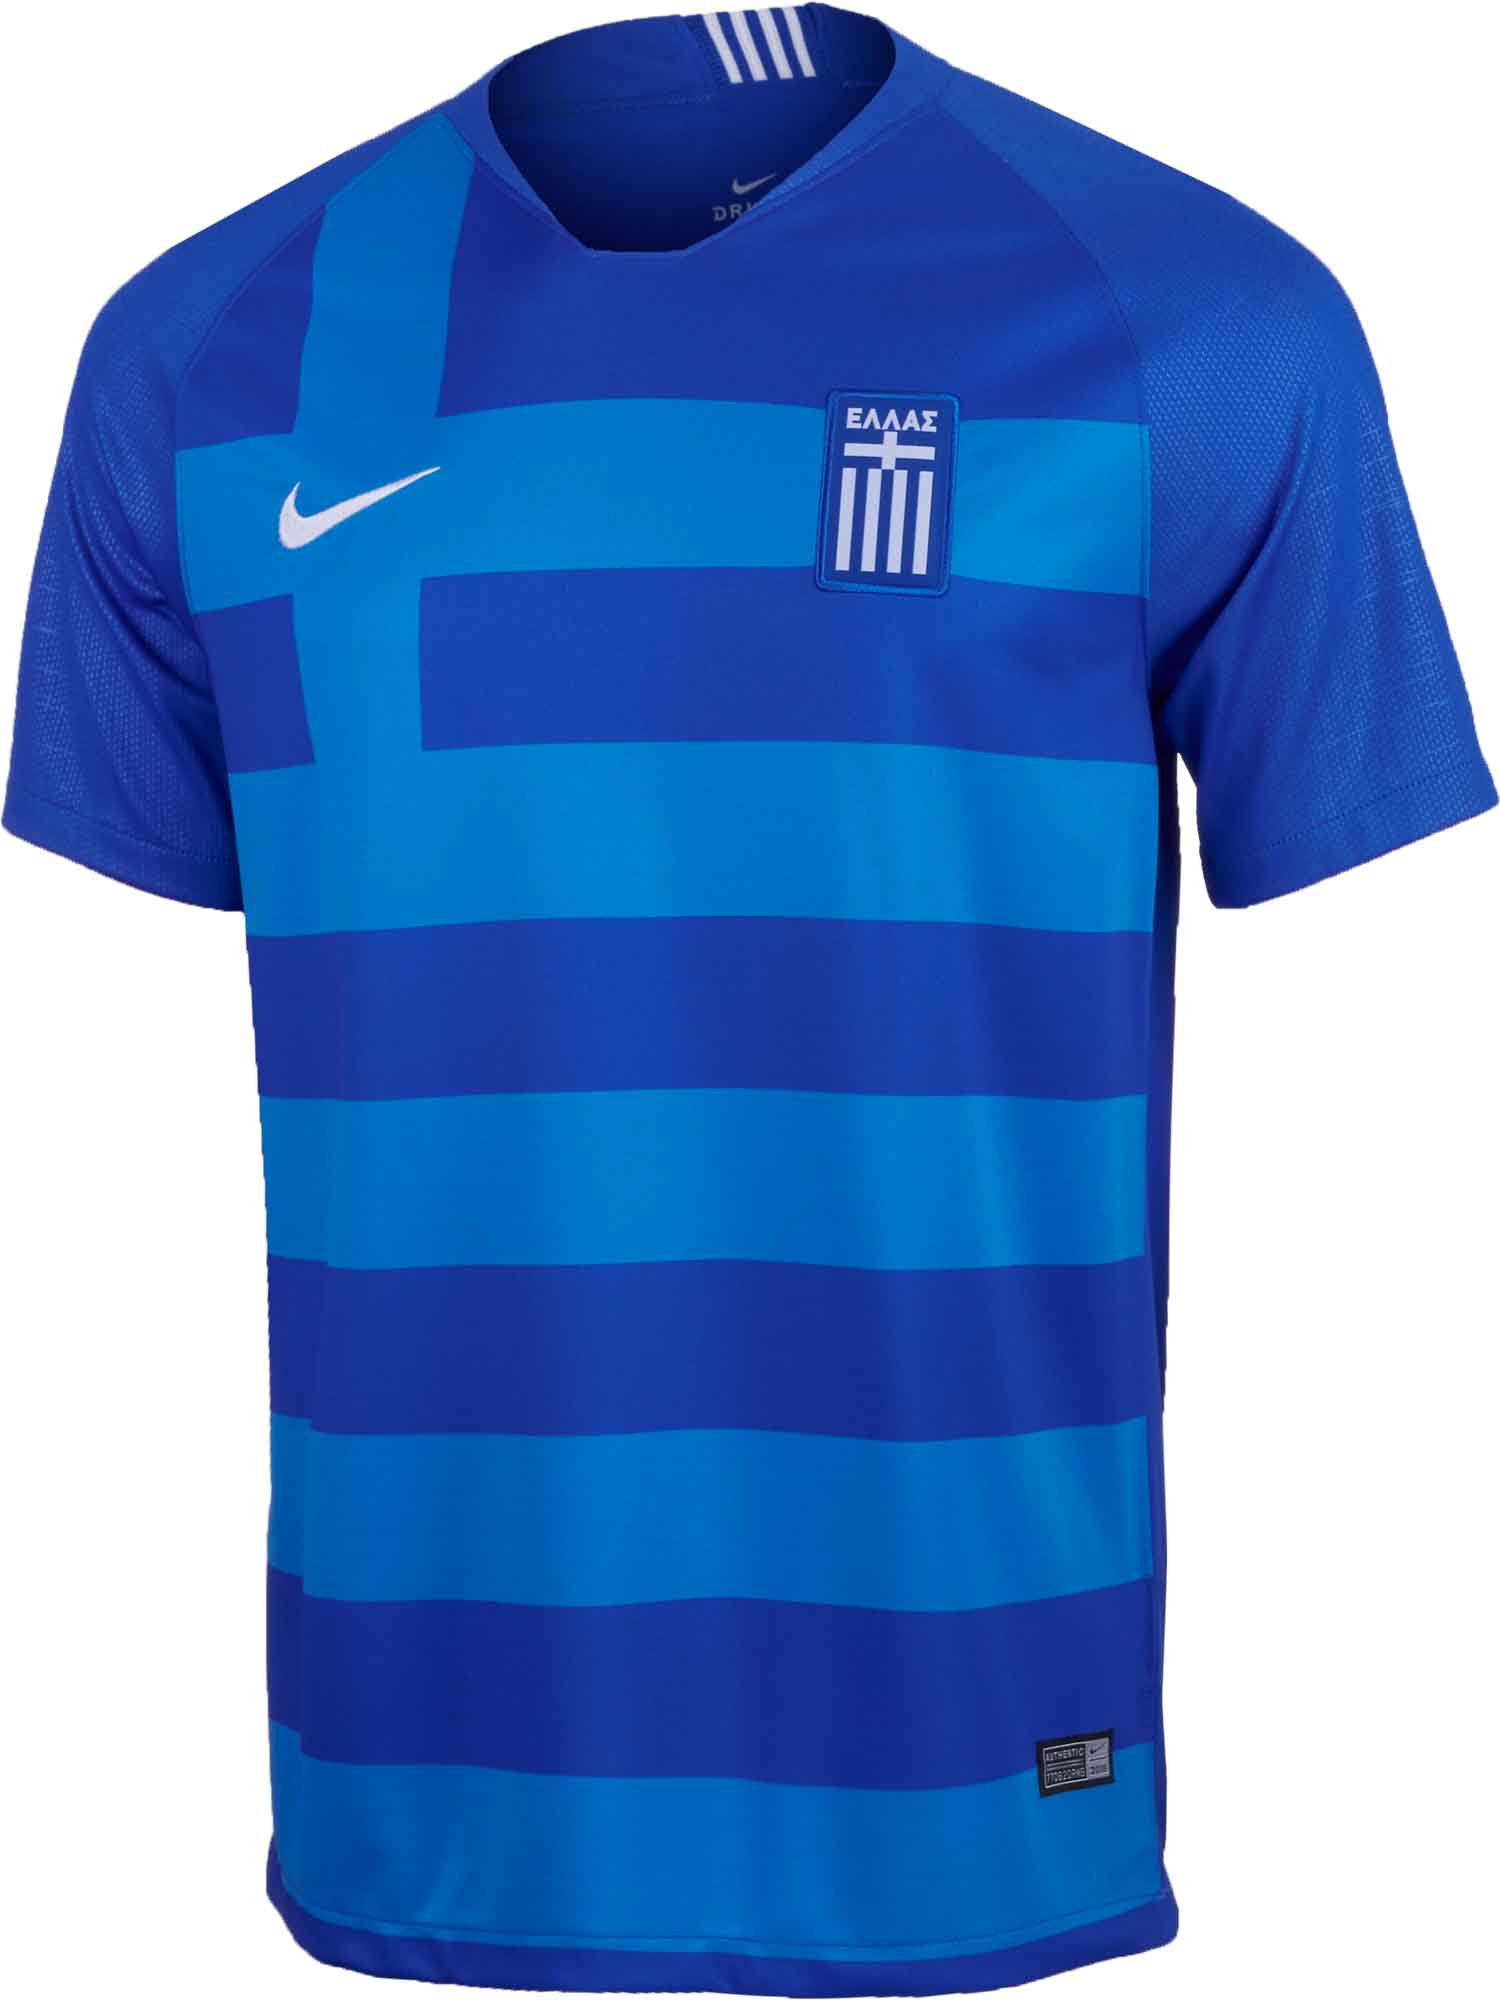 greece national football team jersey